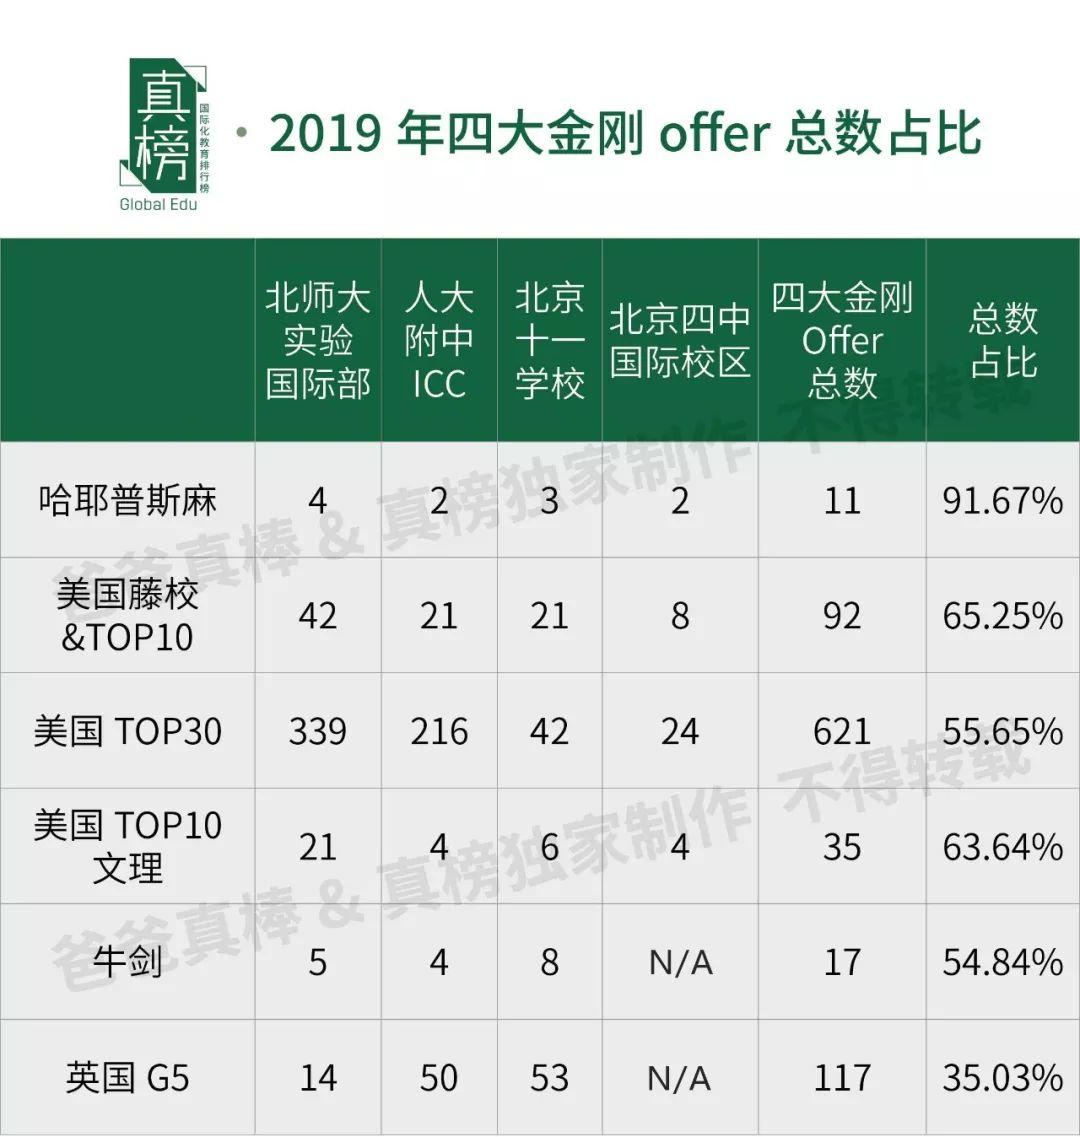 哈耶普斯全国最多，TOP30 Offer过千，见识帝都(北京)真正的力量 数据 美国名校 英国大学 第24张